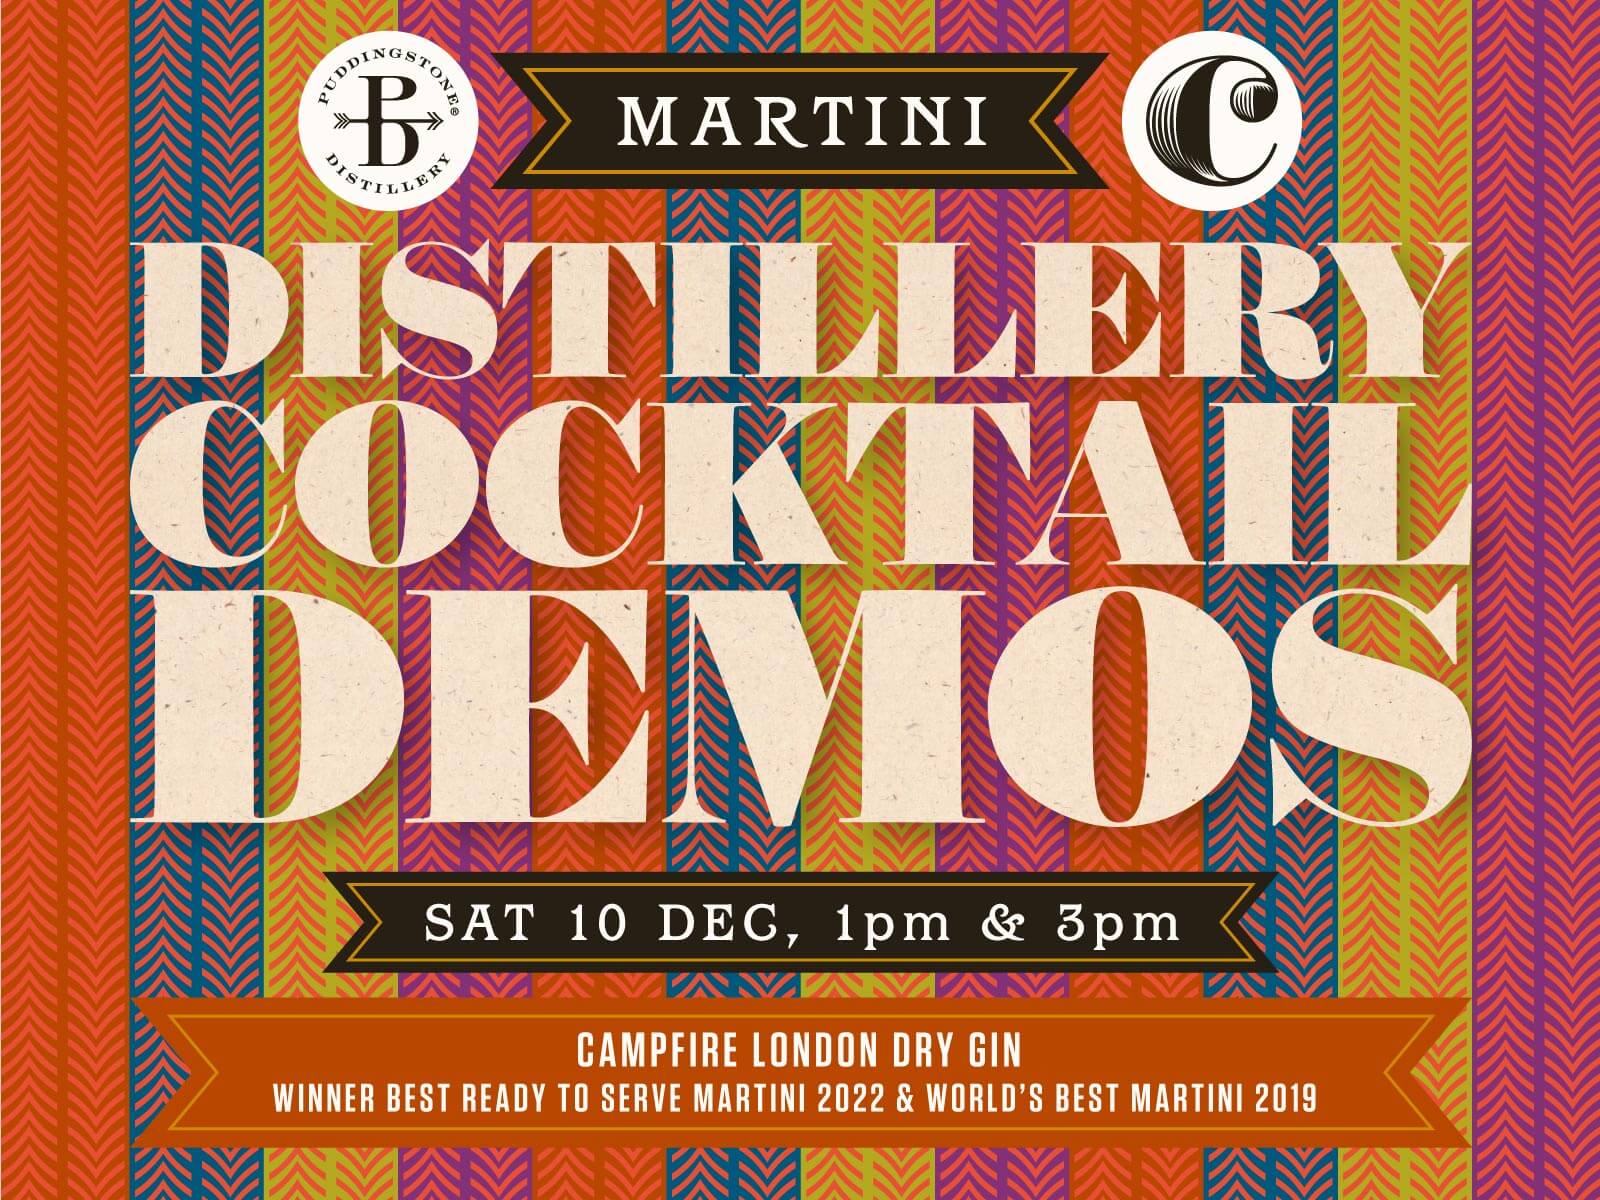 Martini Cocktail Demo 2022